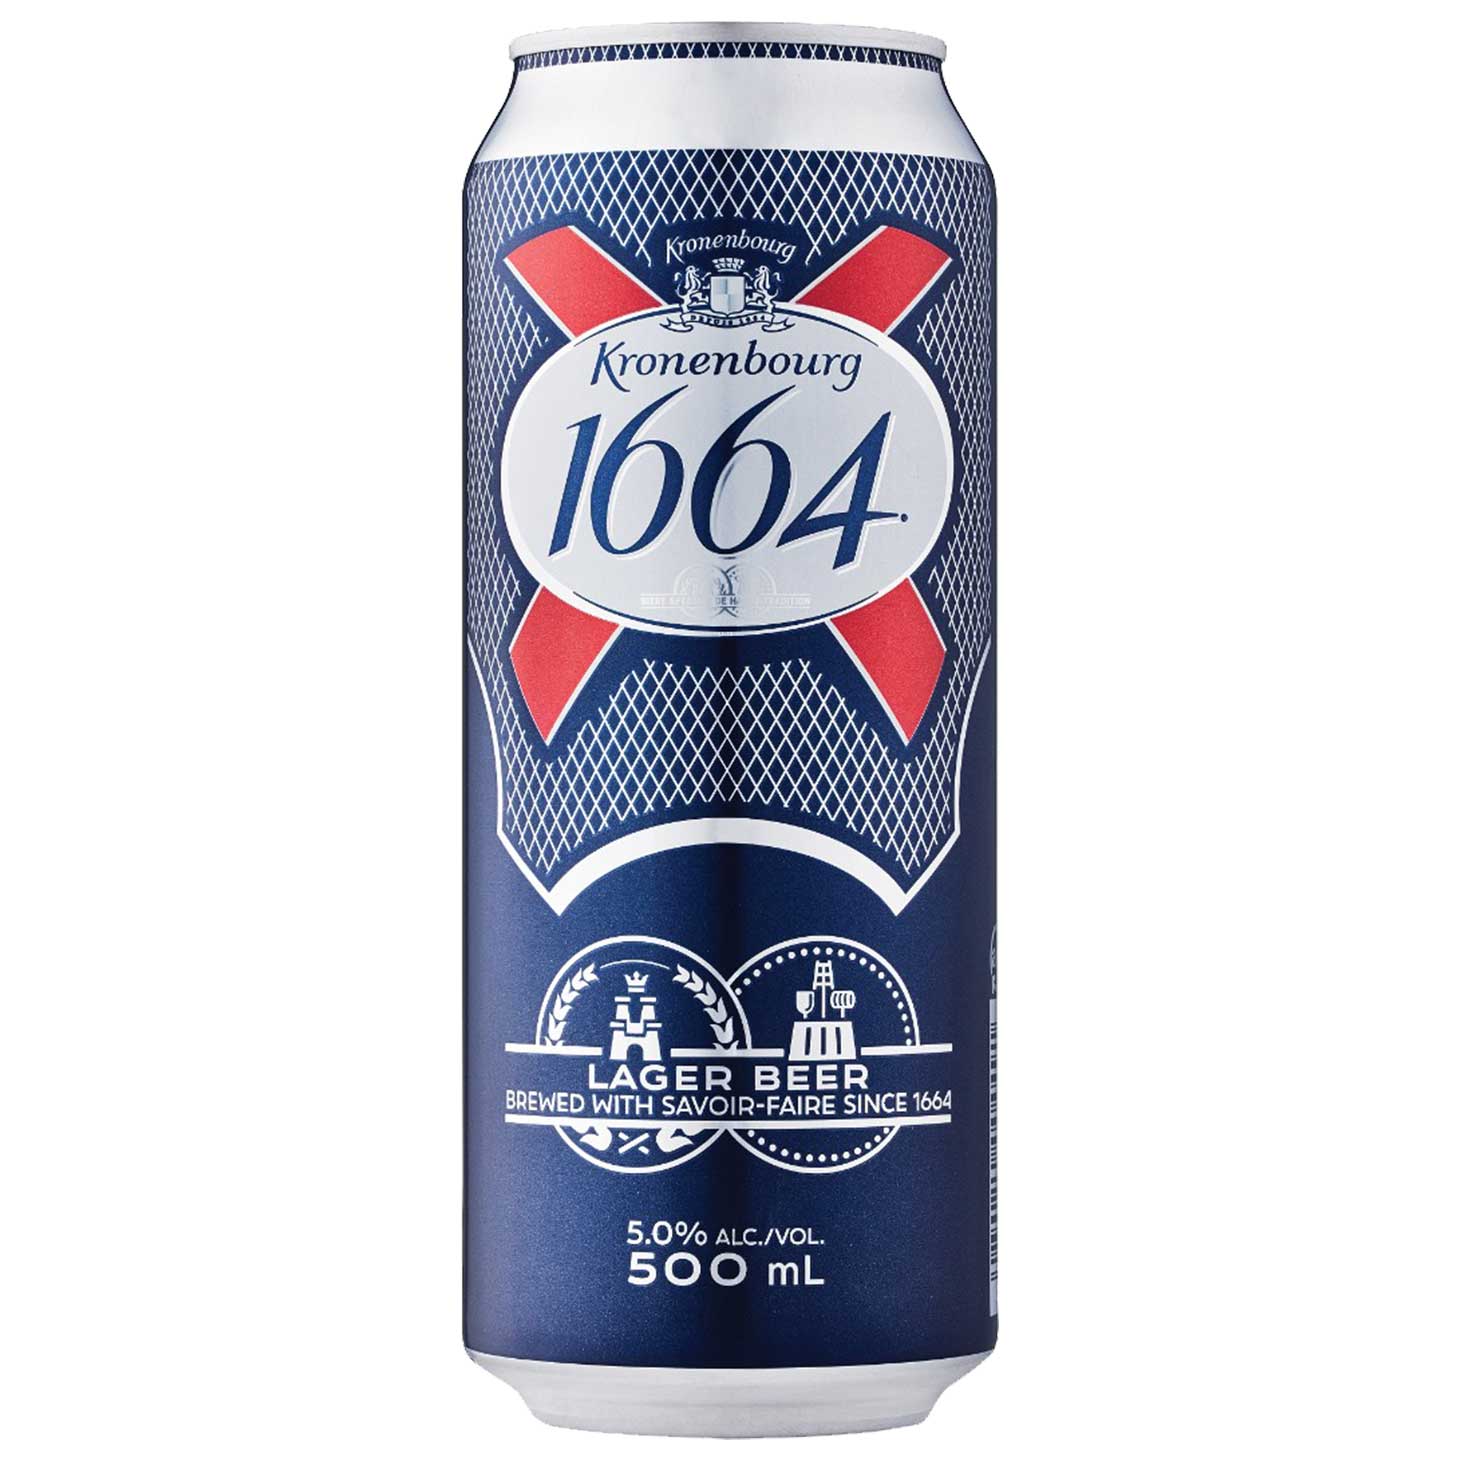 法國可倫堡1664原味啤酒500ml罐裝